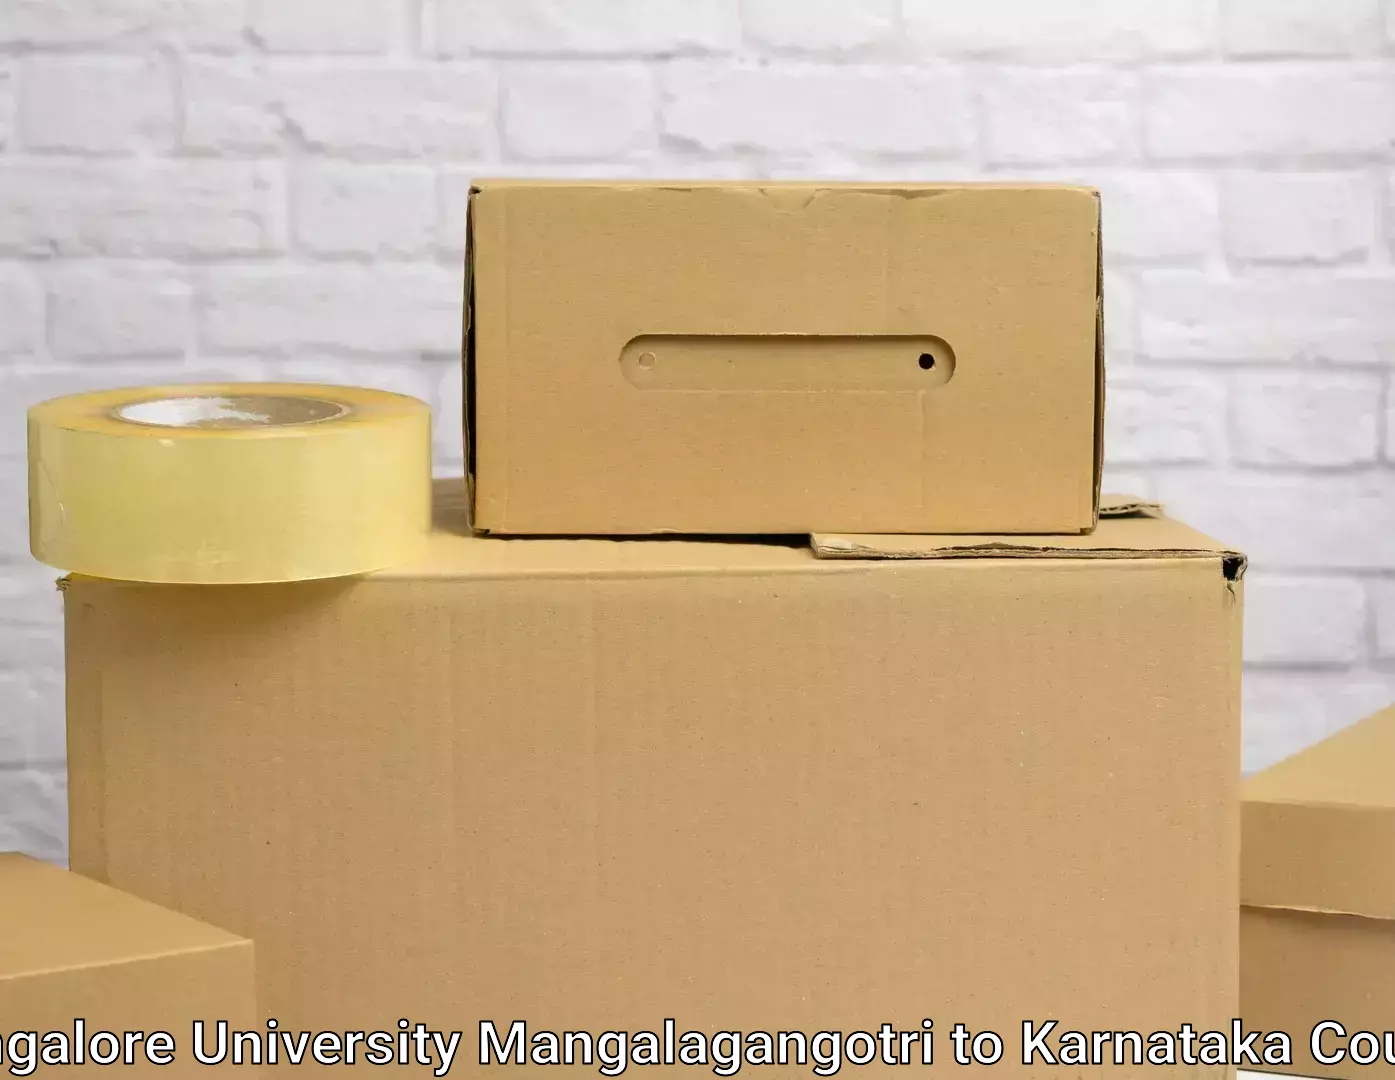 Skilled furniture transporters Mangalore University Mangalagangotri to Honnavar